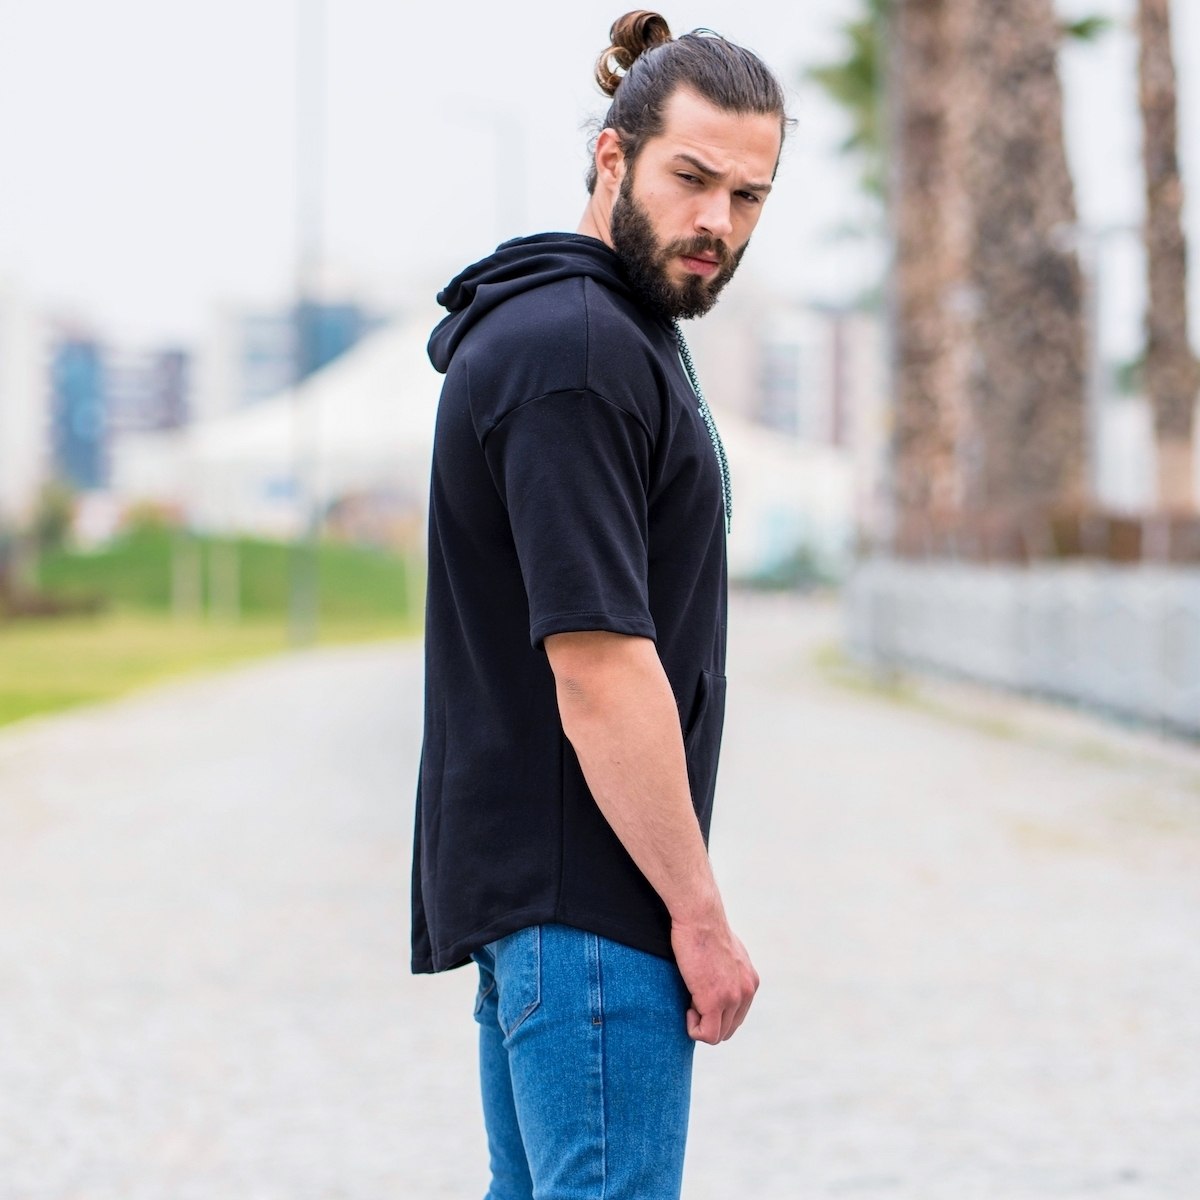 Men's "Sub-Culture" Half-Sleeved Hoodie In Black